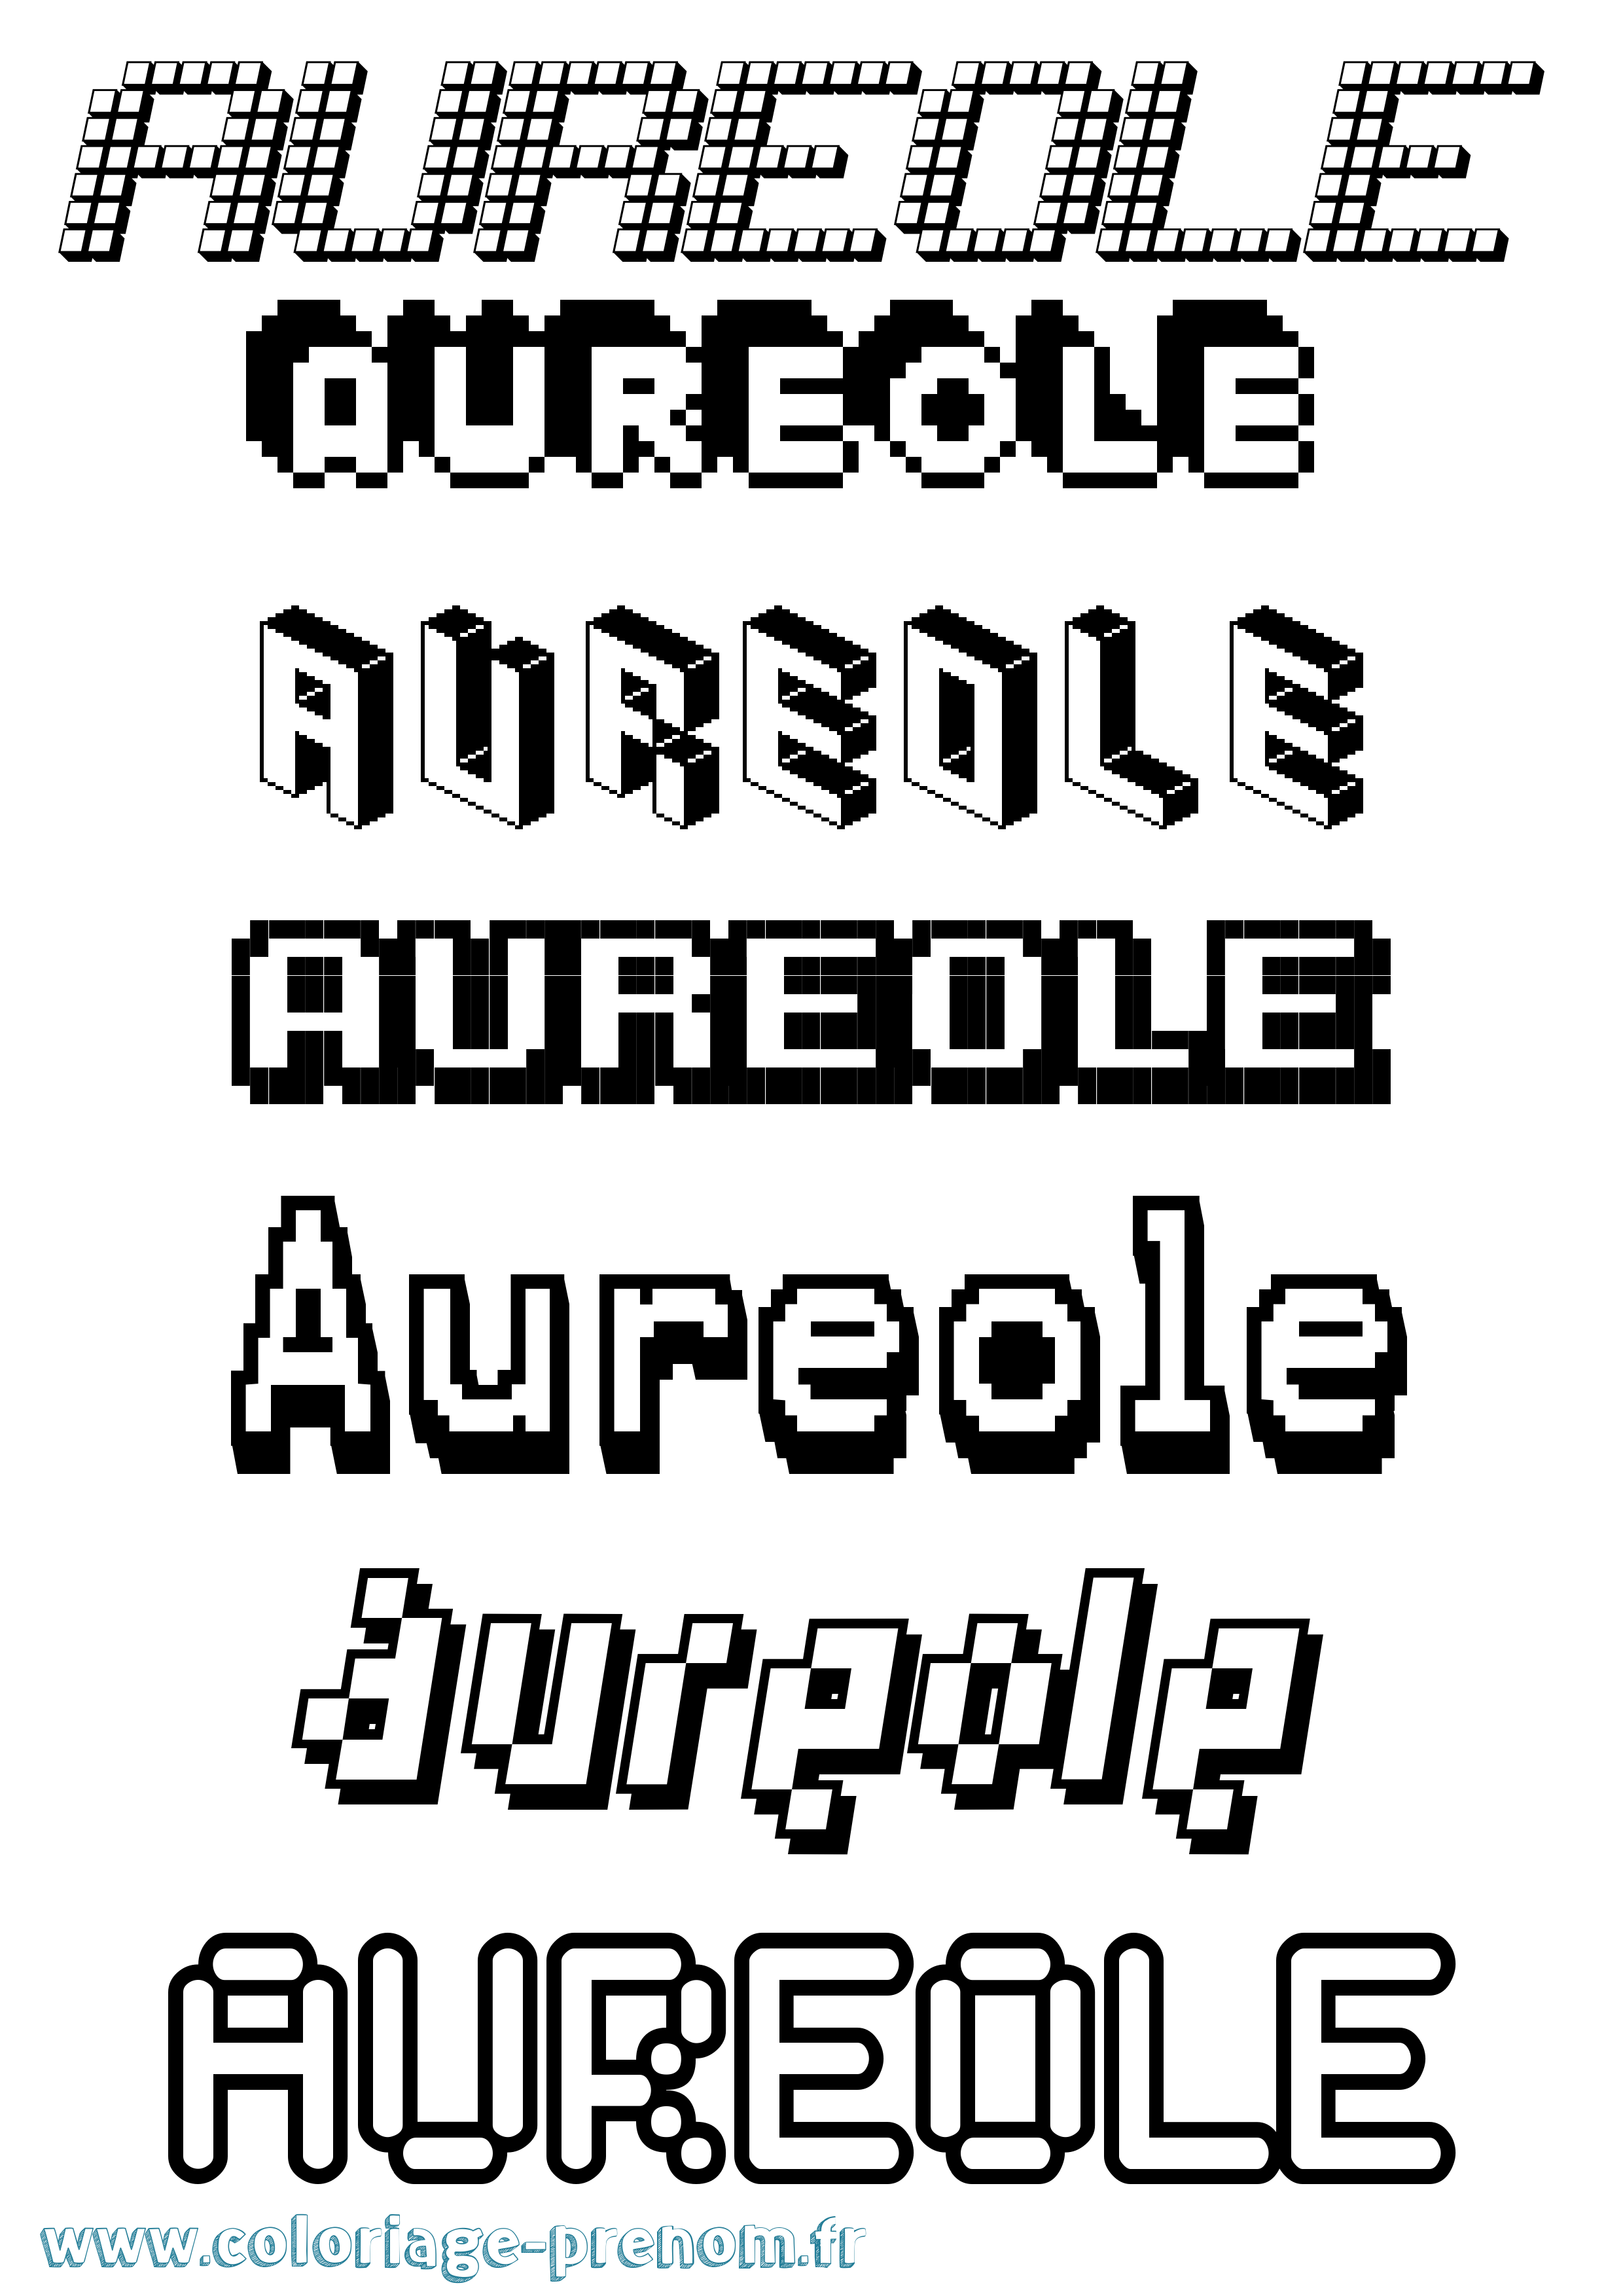 Coloriage prénom Aureole Pixel